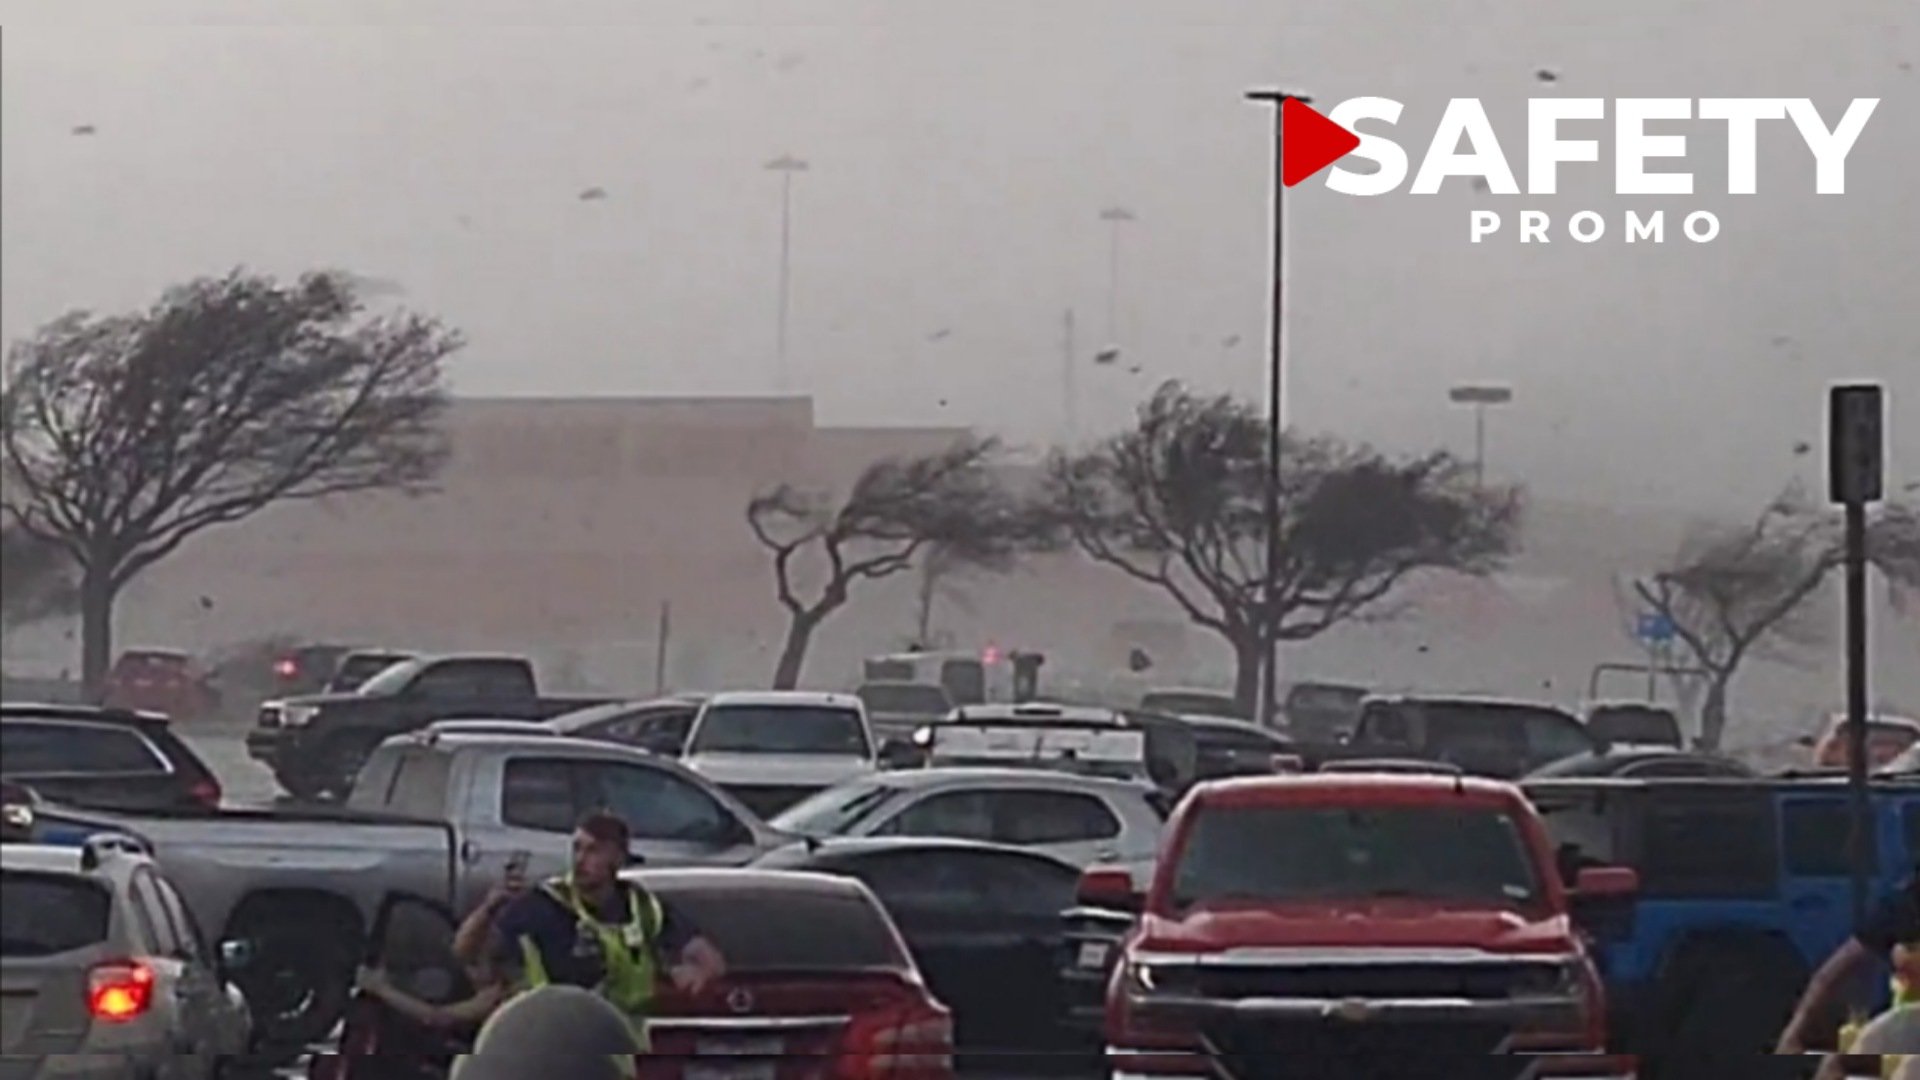 Les images hallucinantes de puissantes tornades filmées devant un supermarché au Texas